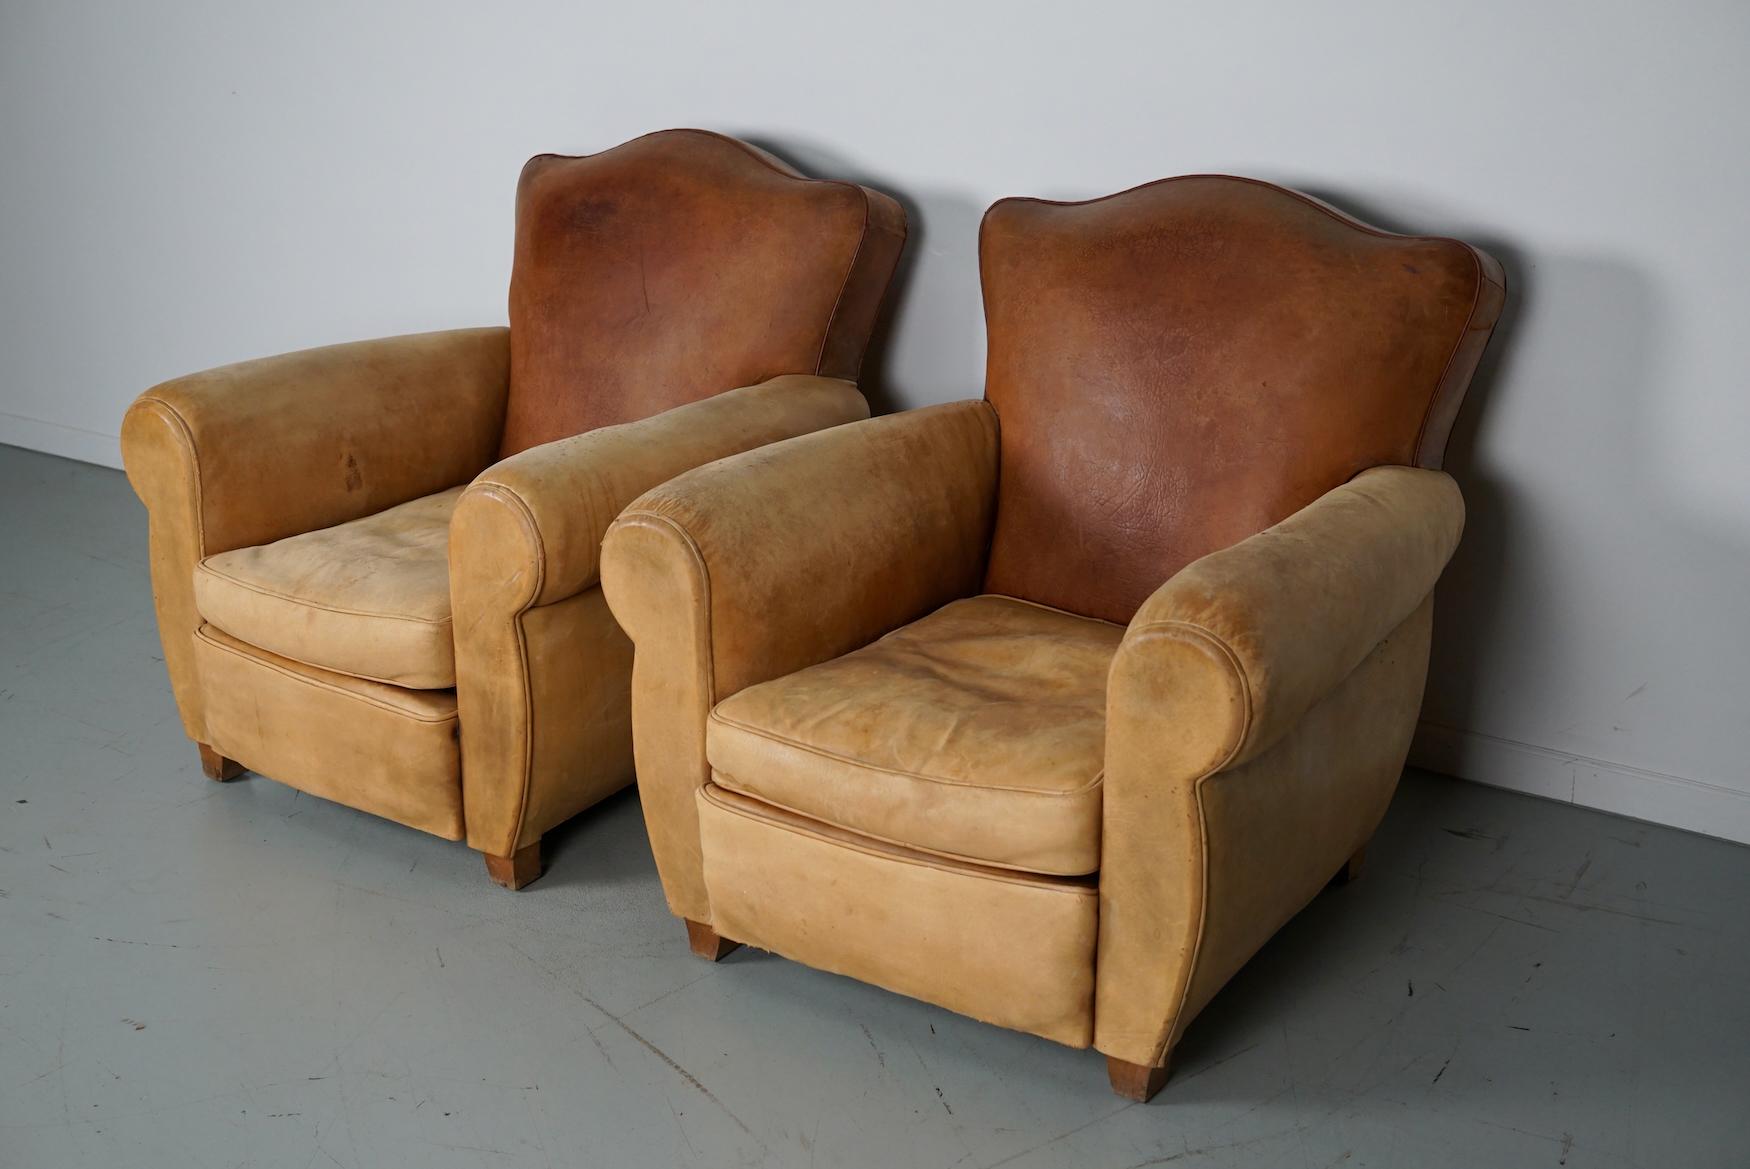 Ces fauteuils club ont été conçus et produits en France dans les années 1940. Les chaises sont fabriquées en cuir cognac maintenu par des broches métalliques et montées sur des pieds en bois.